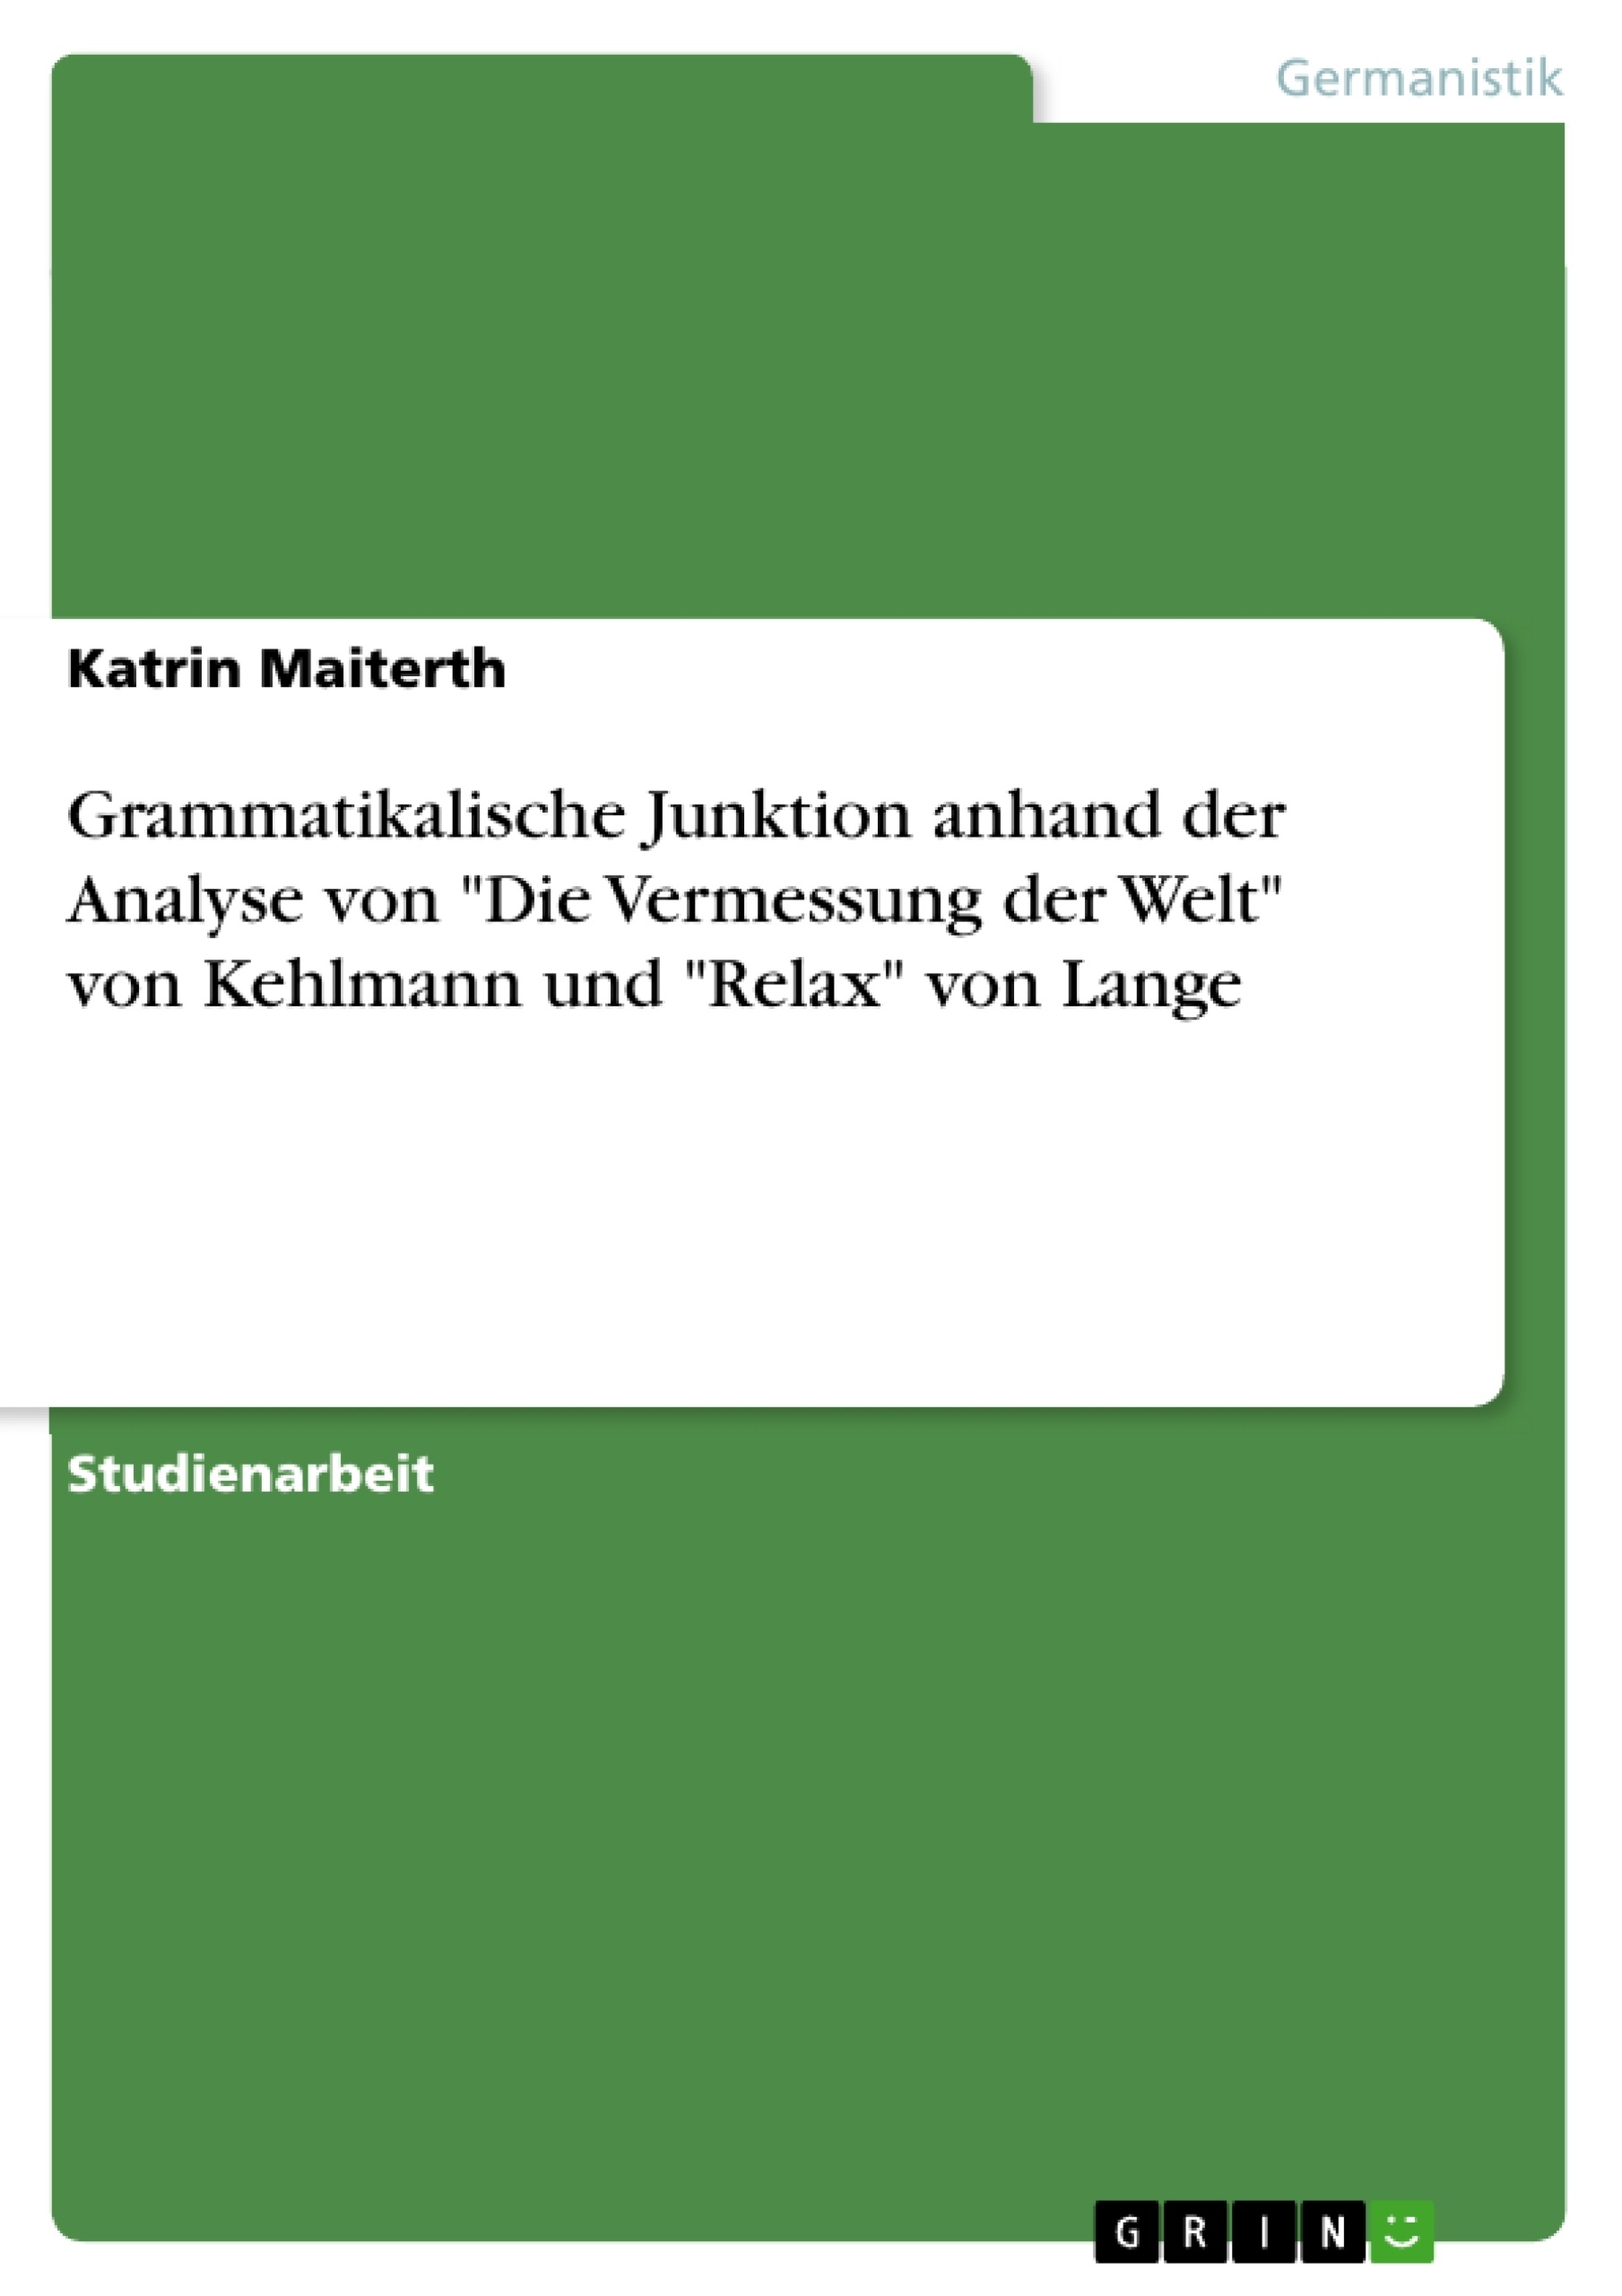 Título: Grammatikalische Junktion anhand der Analyse von "Die Vermessung der Welt" von Kehlmann und "Relax" von Lange